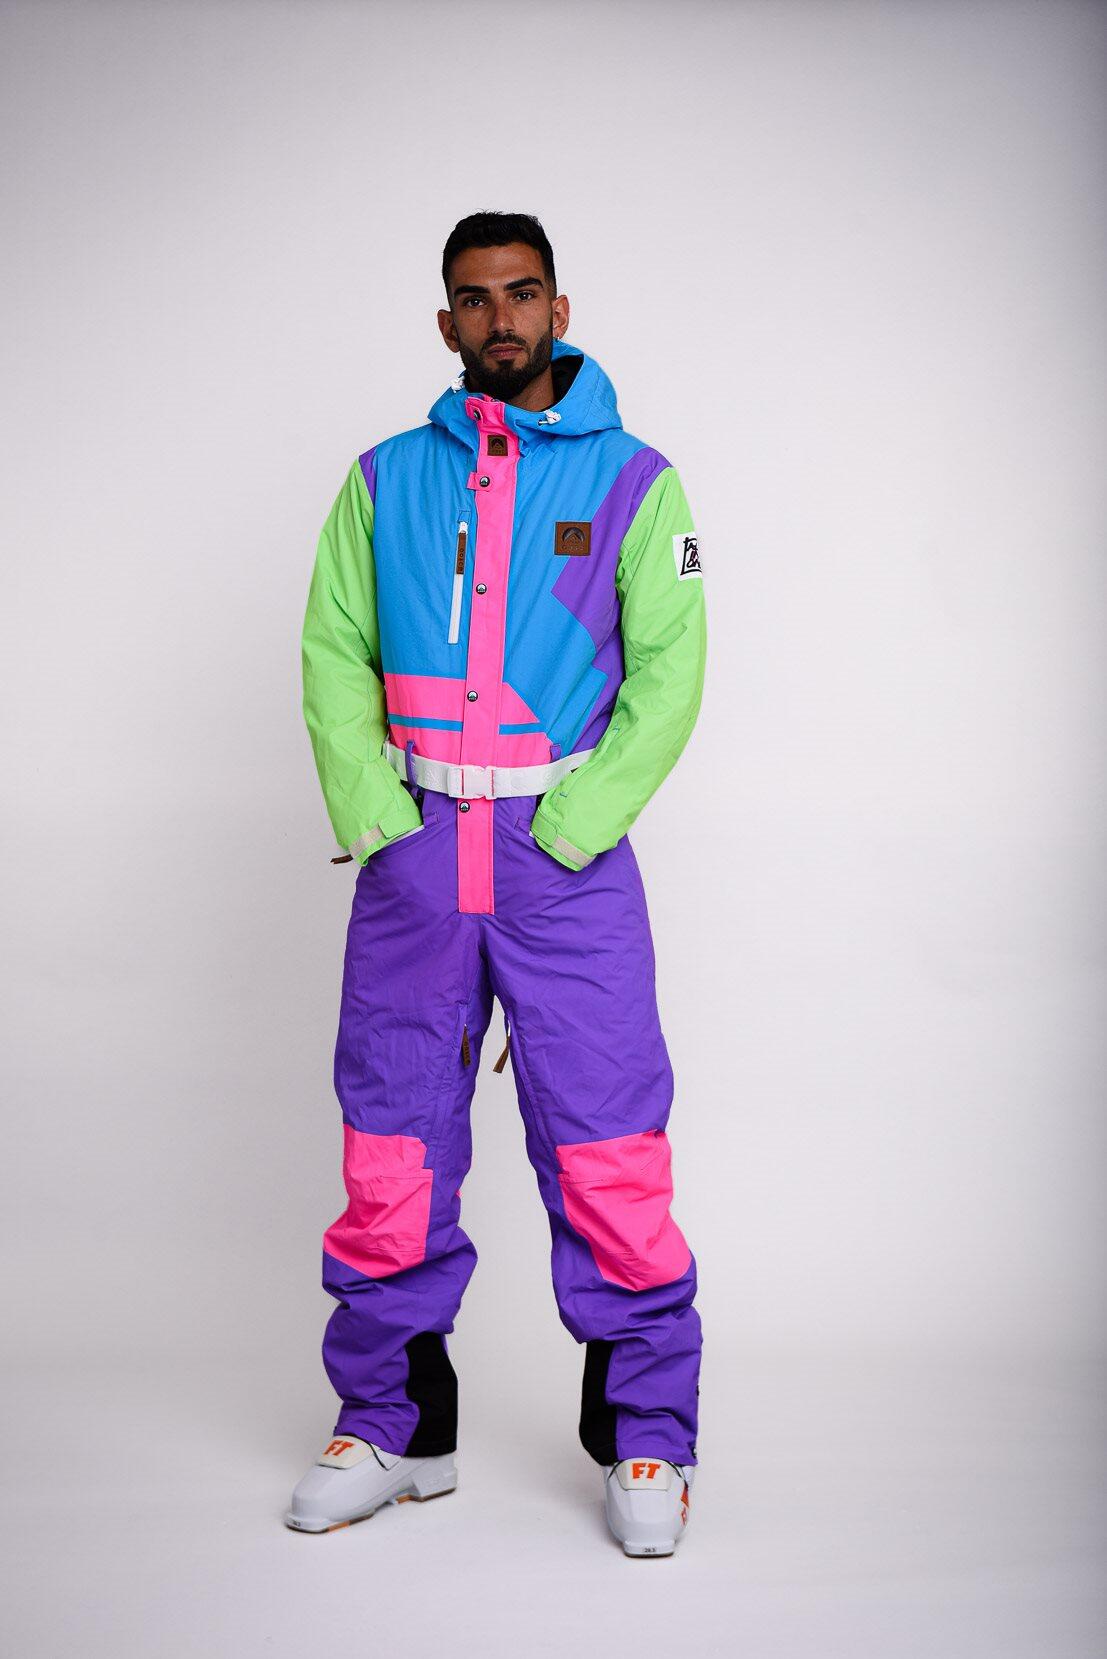 OOSC Powder Hound Ski Suit - Men's / Unisex